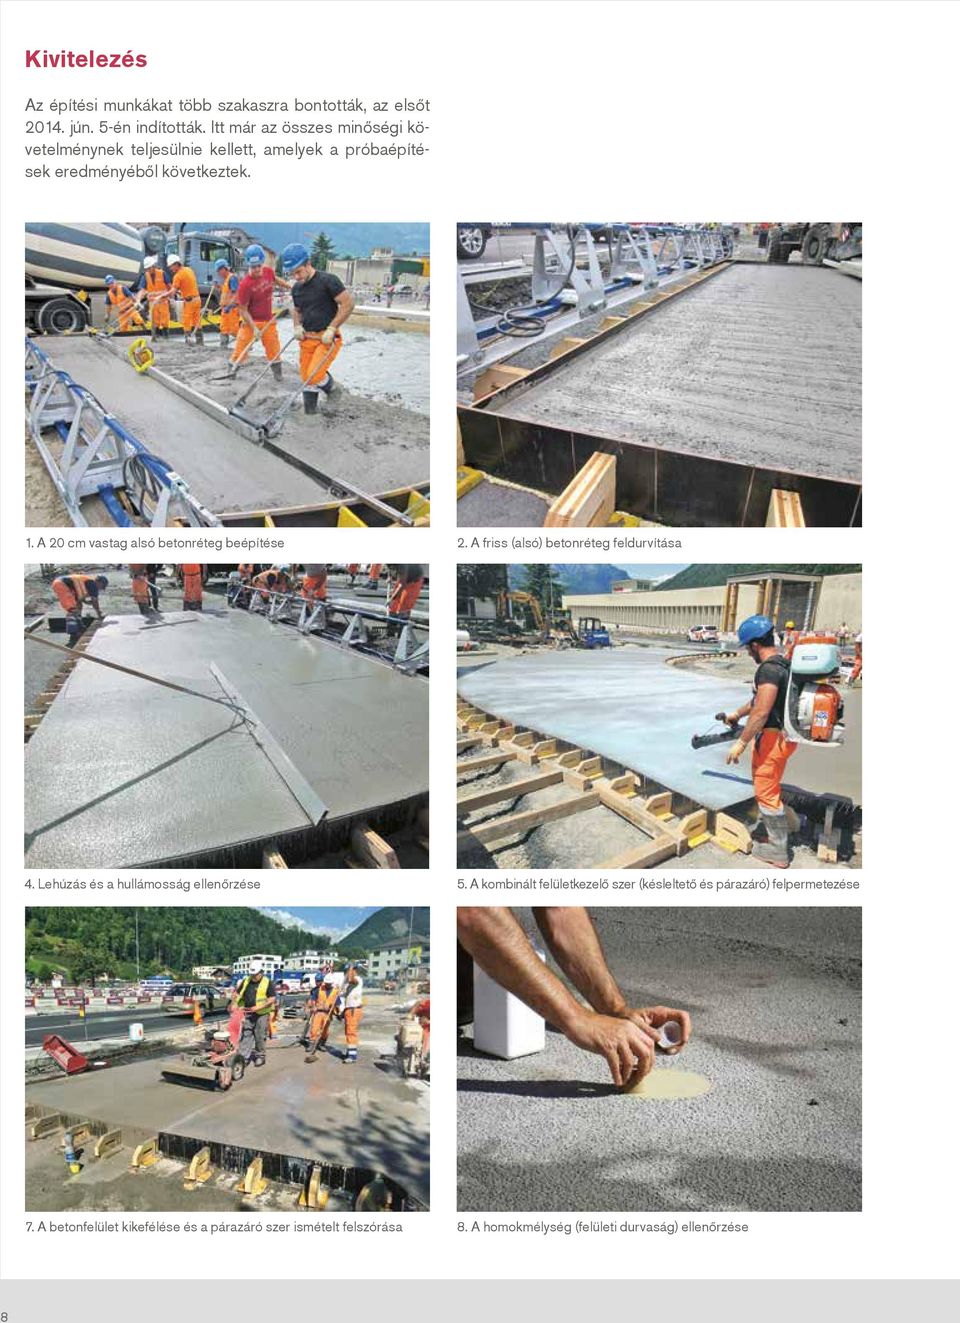 A 20 cm vastag alsó betonréteg beépítése 2. A friss (alsó) betonréteg feldurvítása 4. Lehúzás és a hullámosság ellenőrzése 5.